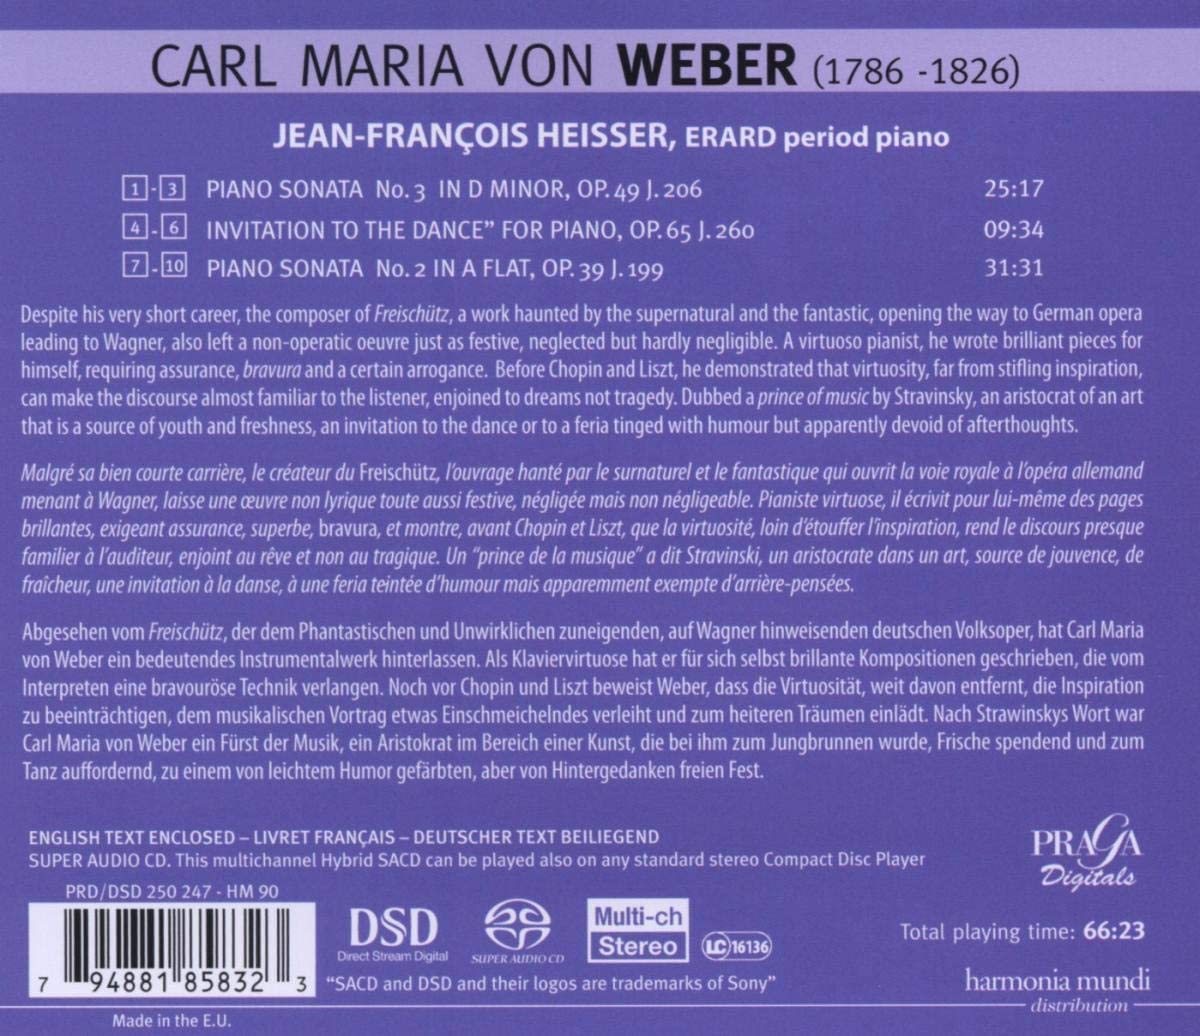 Weber: Piano Sonatas 1 & 2, Invitation to the dance - slide-1